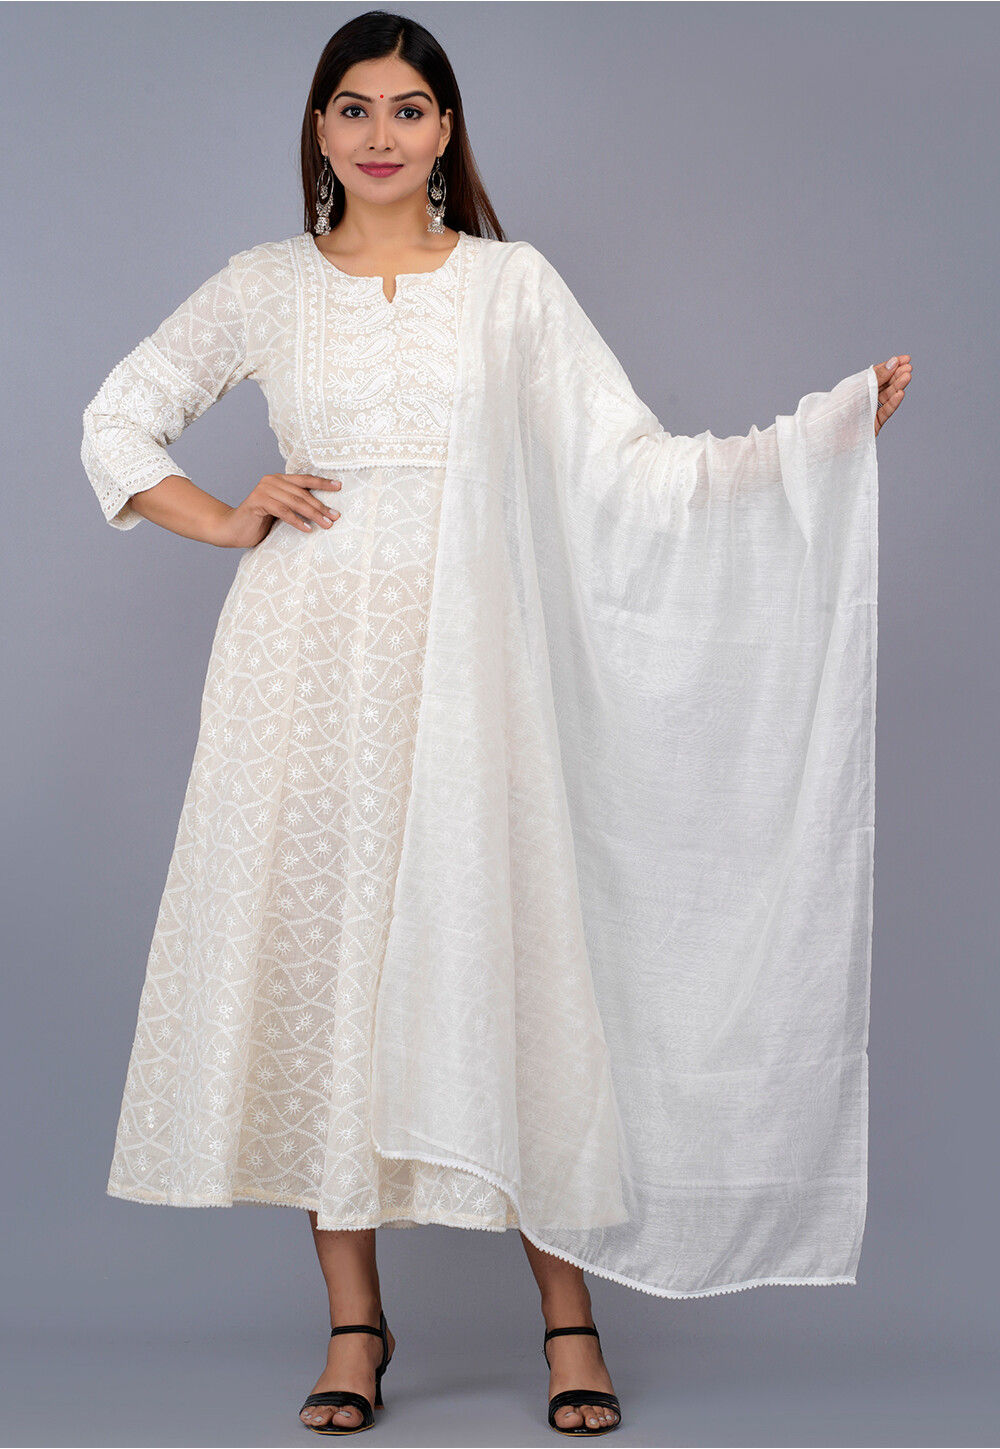 White Chikankari Kurta // White Chikankari Dress // Lucknow Chikankari  Kurti Hand Embroidery Dress // Wedding Wear Dress Gift for Her - Etsy  Finland